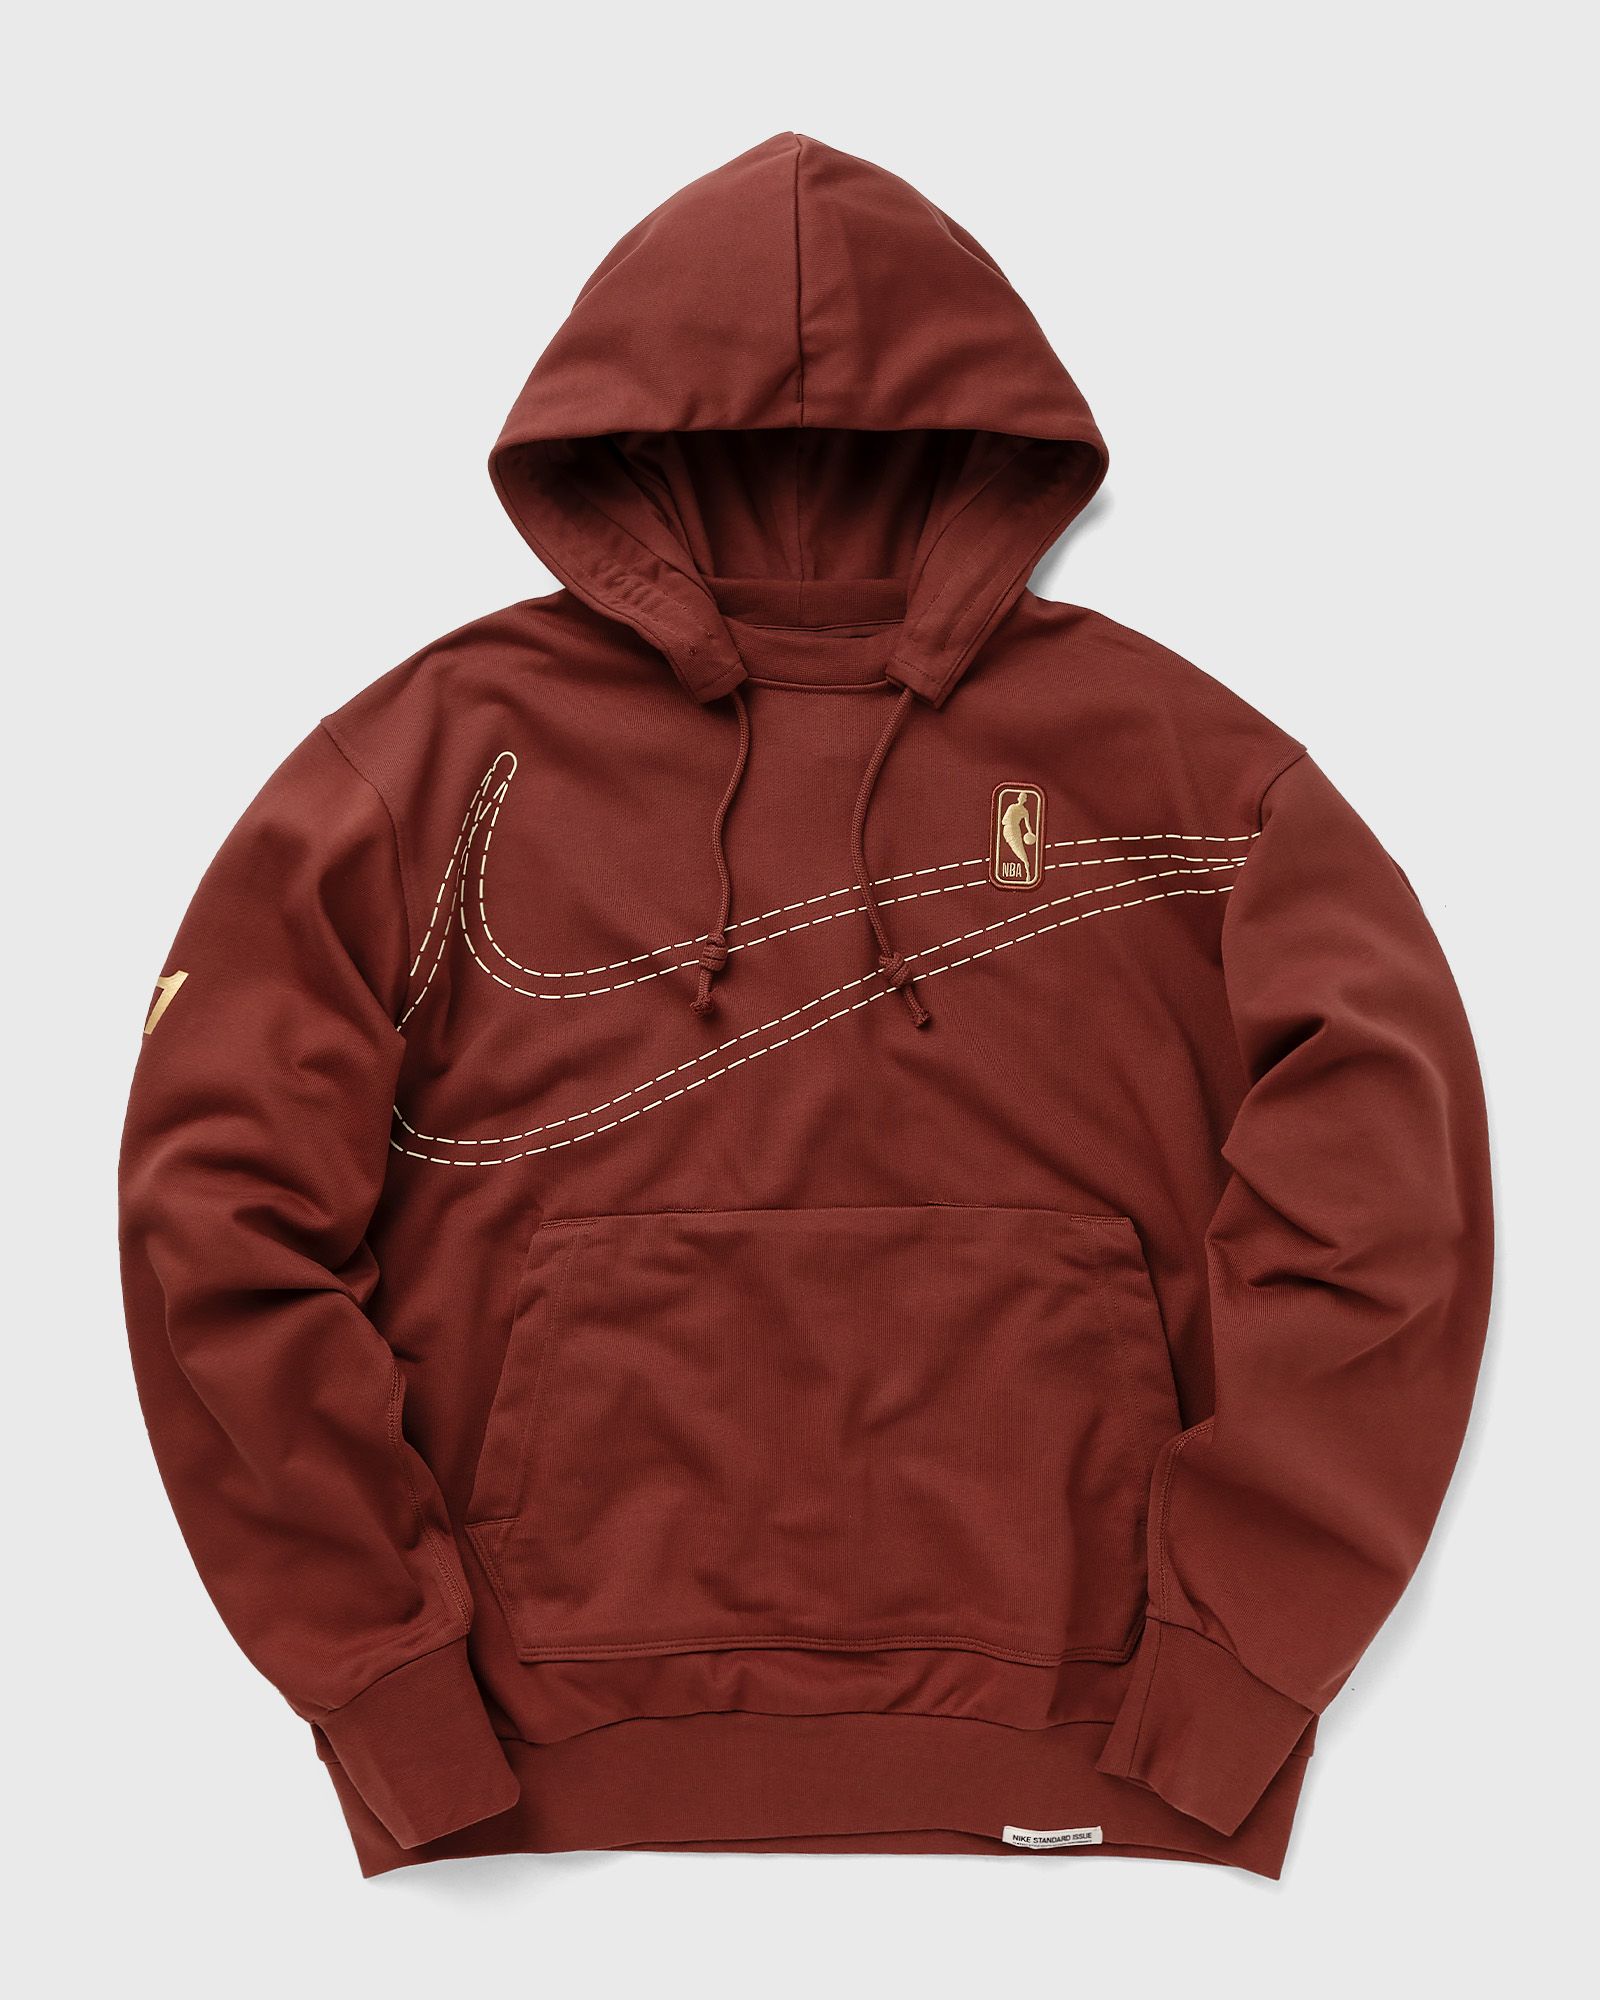 Nike - team 31 standard issue hoodie men hoodies red in größe:s